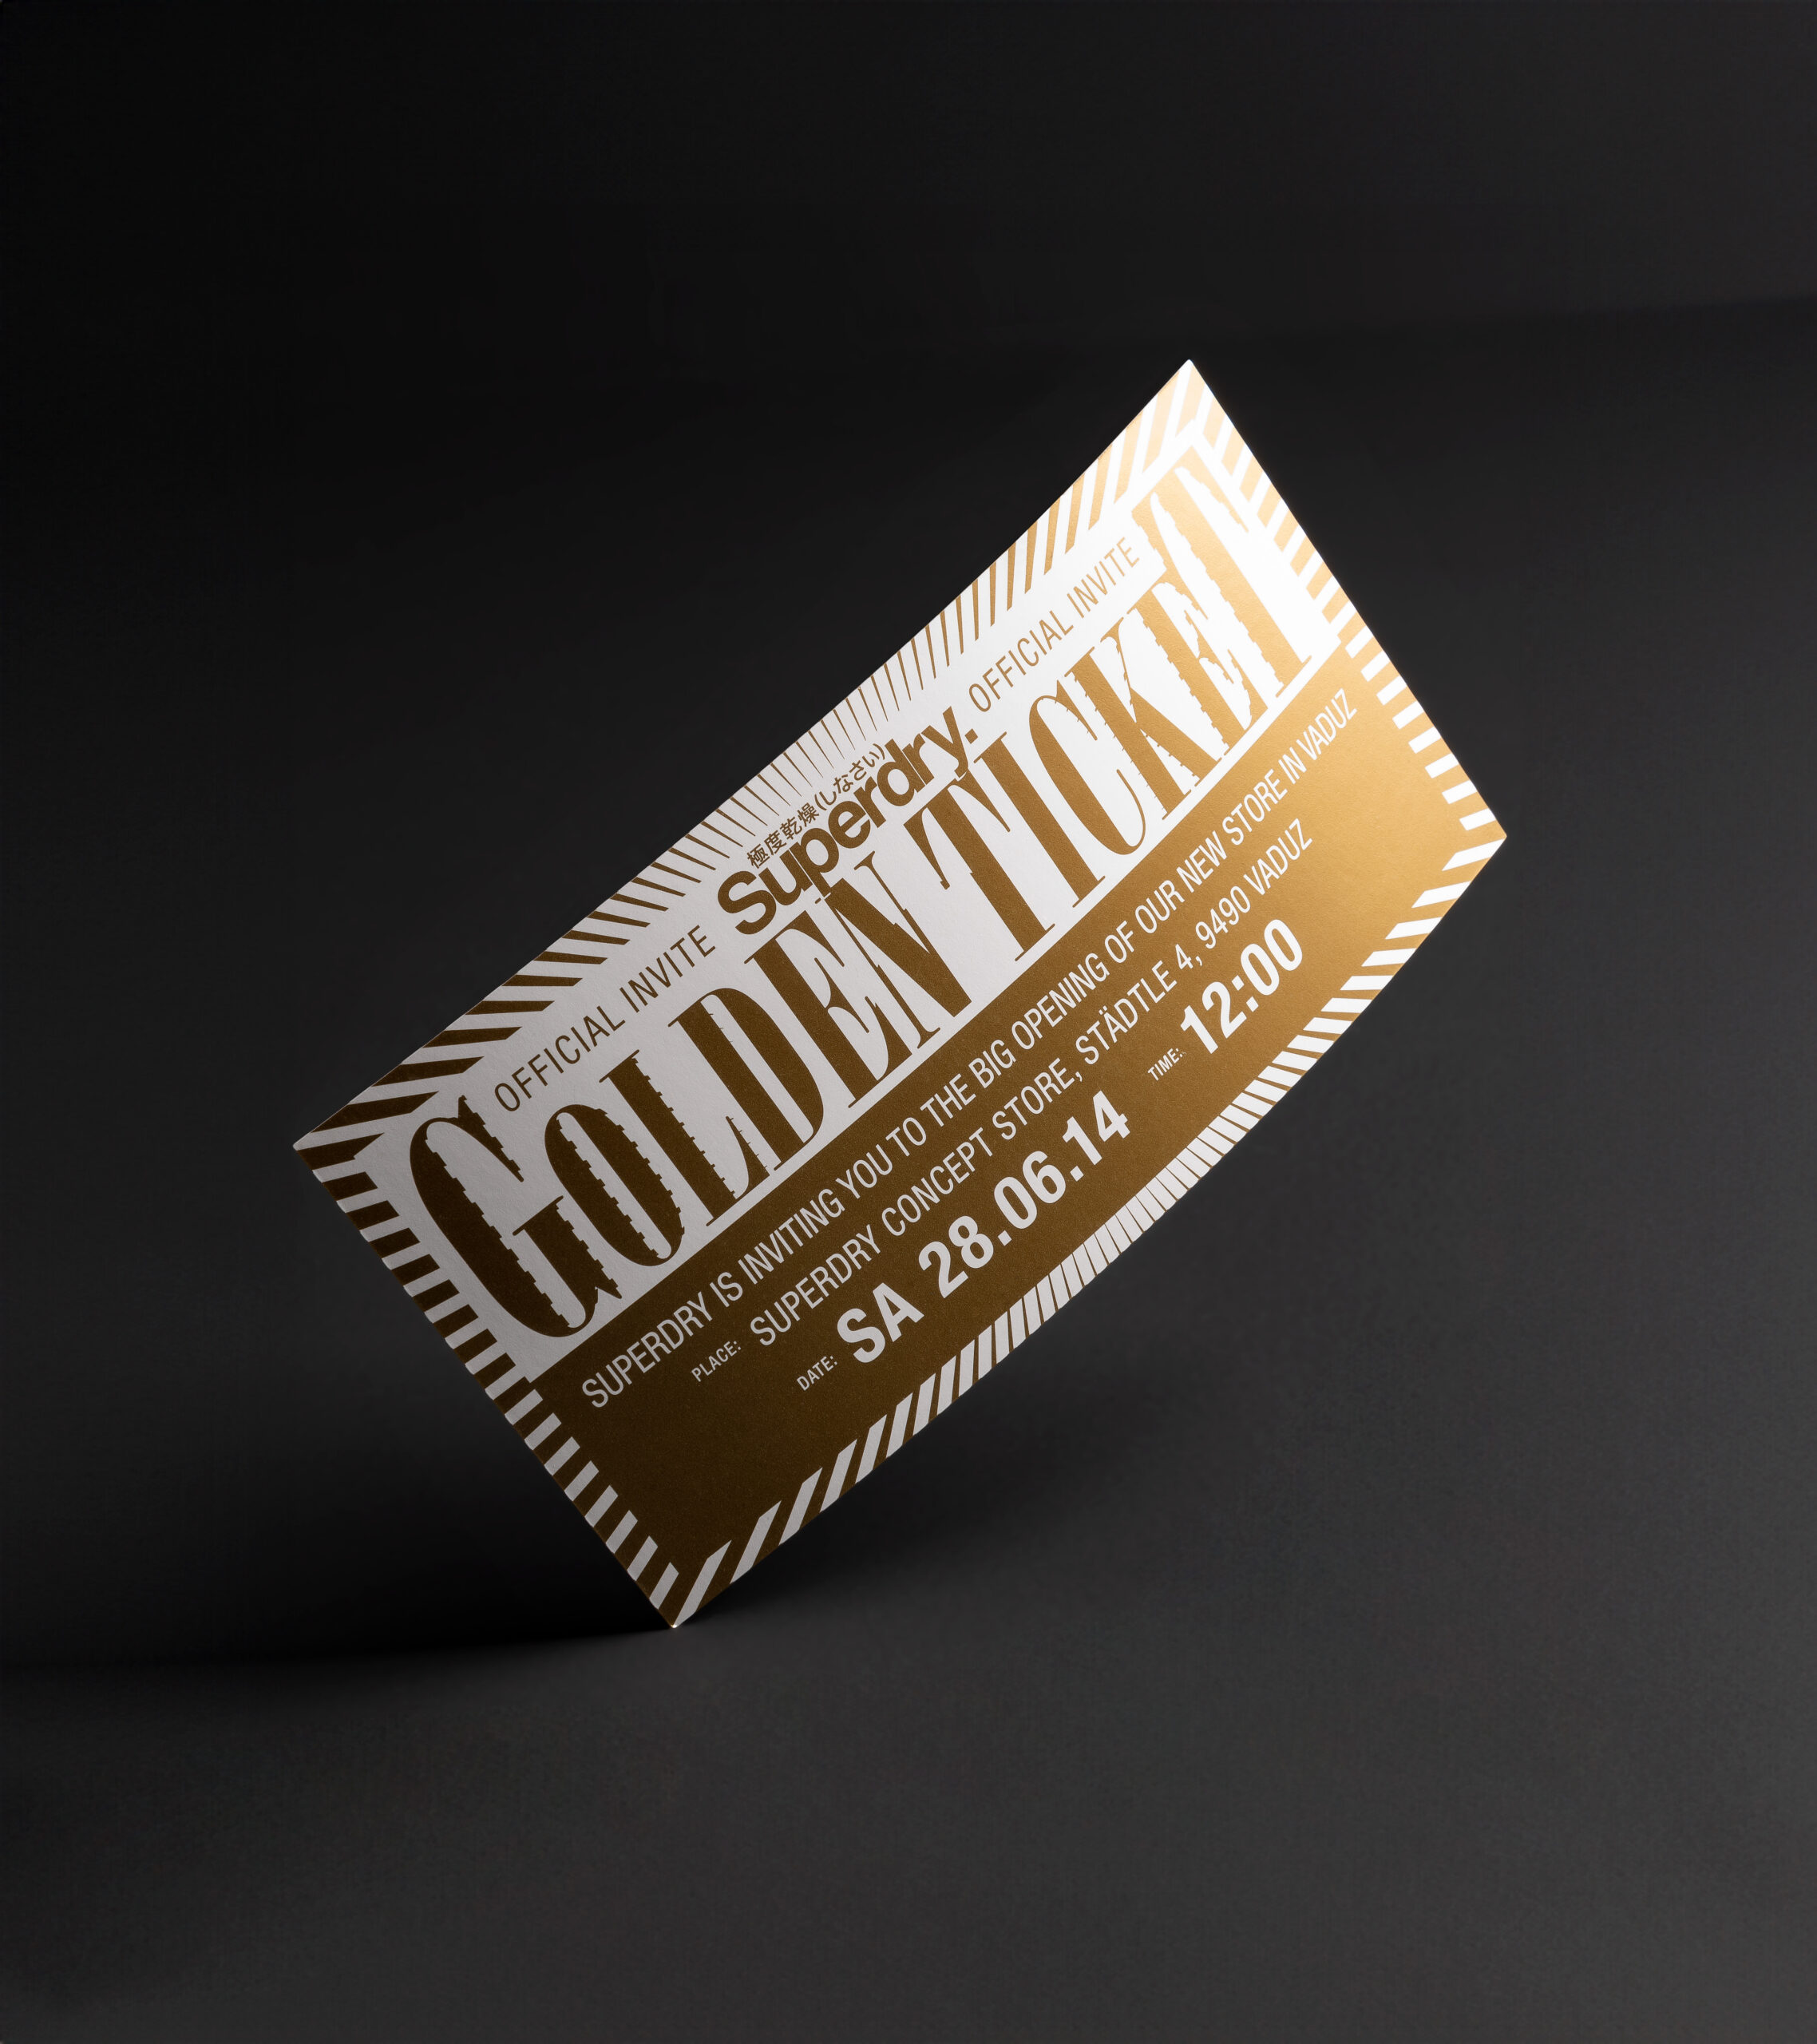 Einladungskarte mit Firmen-Logo komplett mit Metallic-Gold gedruckt im Offset-Druck.